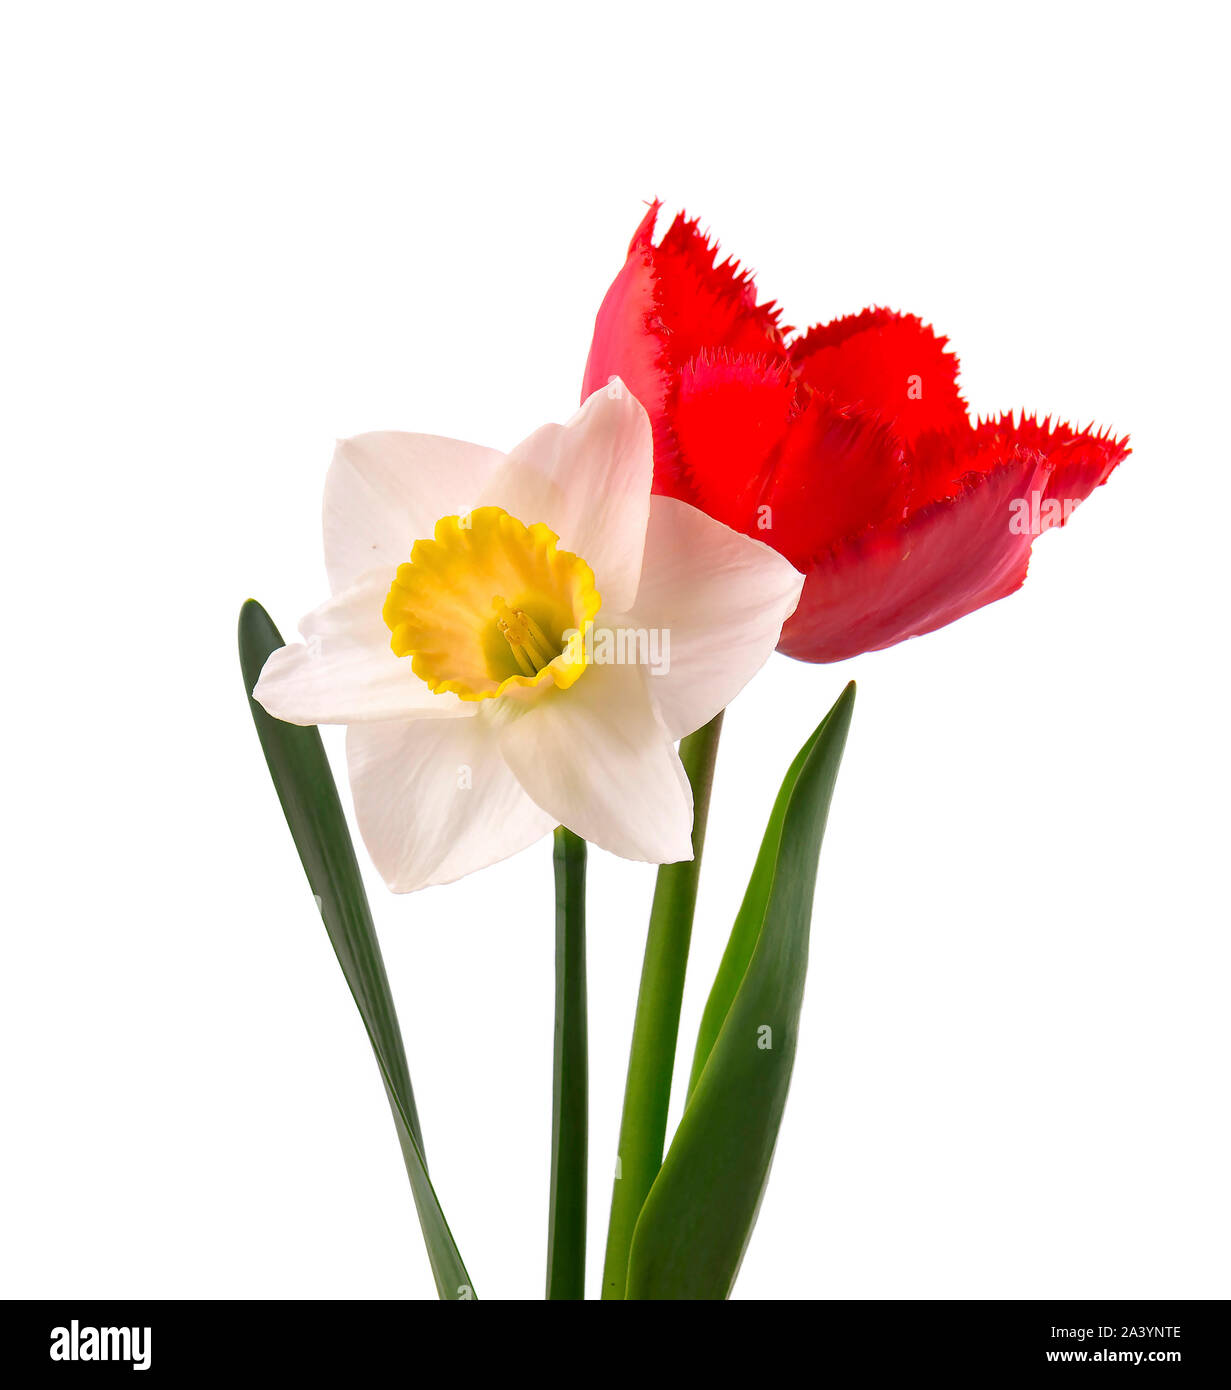 Jonquille jaune vif et rouge tulip, isolé sur fond blanc Photo Stock - Alamy